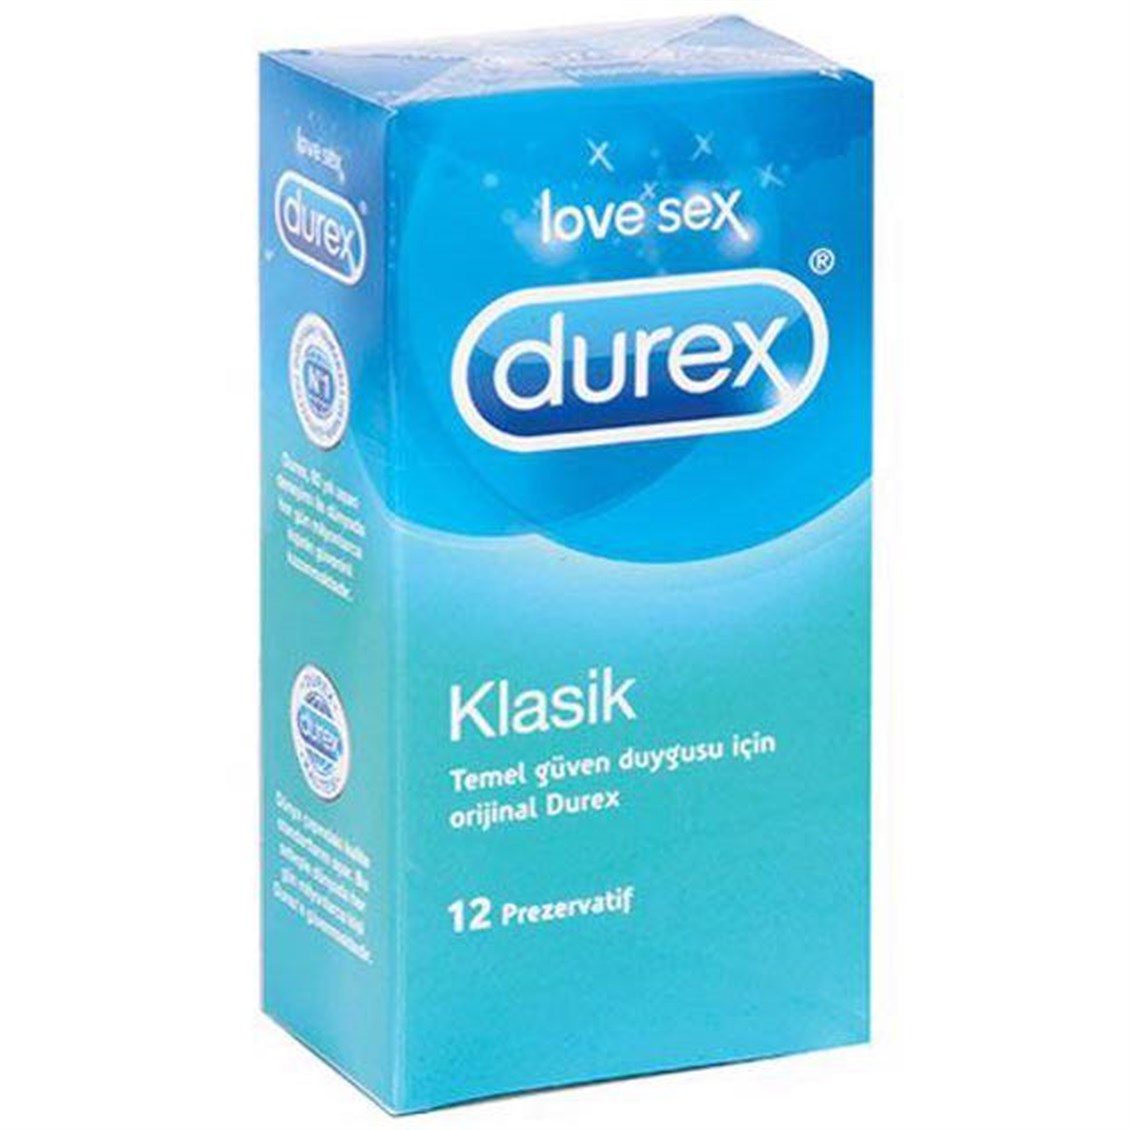 Durex Klasik Prezervatif 12'Li - Onur Market